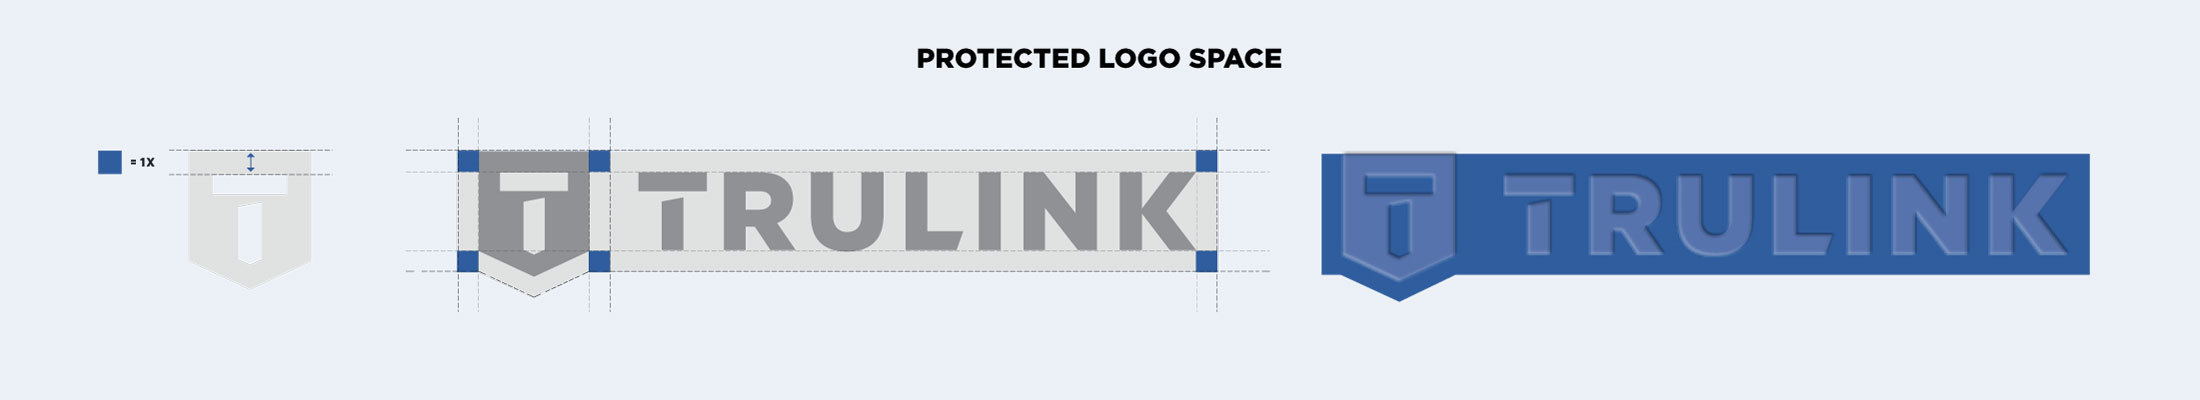 trulink logo guidelines